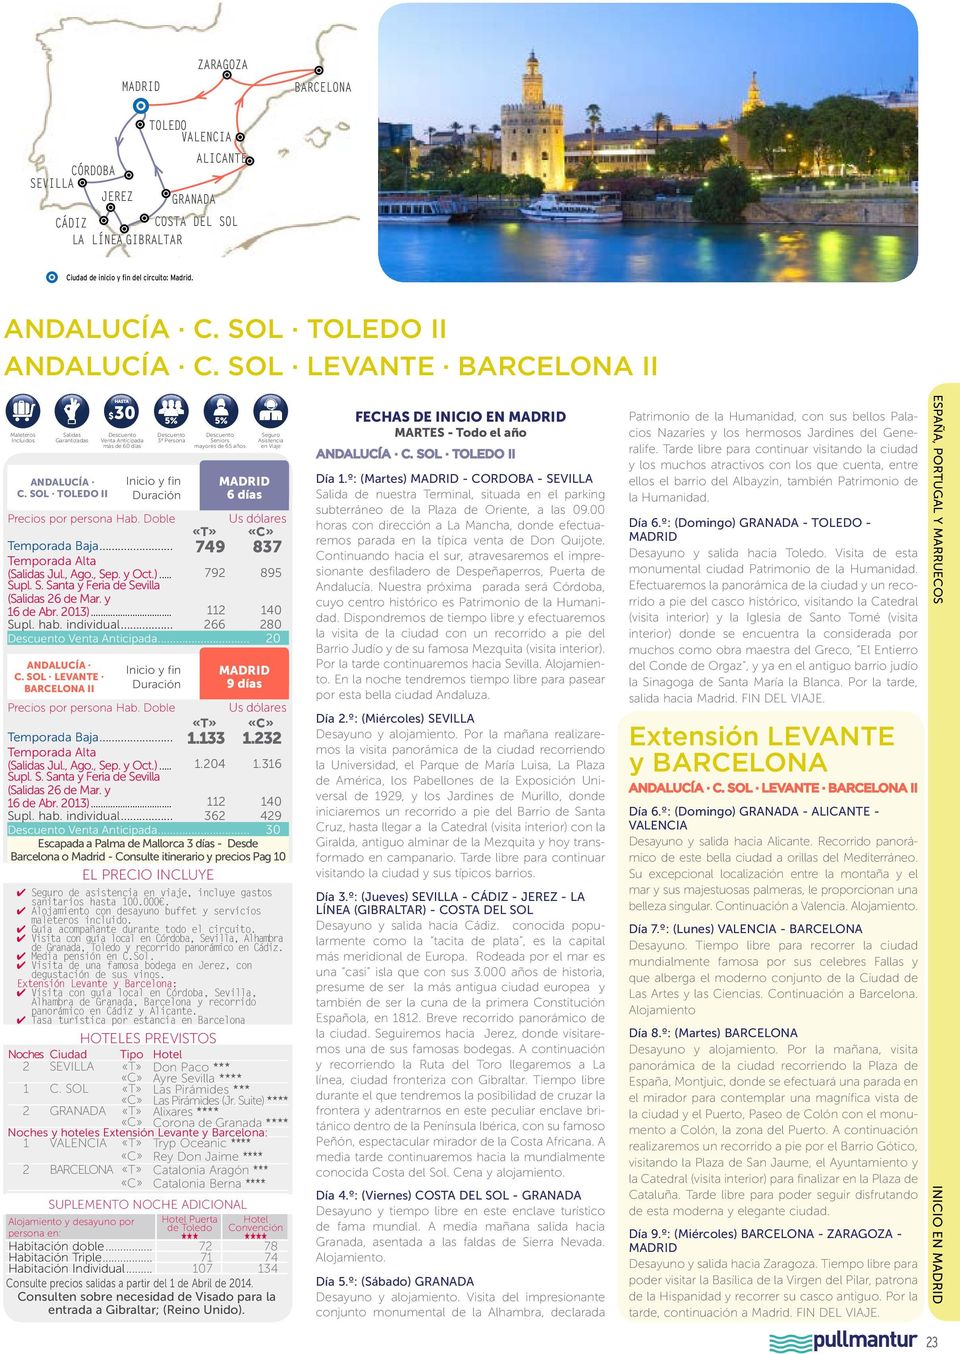 .. 20 Andalucía C. Sol Levante Barcelona II 9 días Temporada Baja... 1.133 1.232 ( Jul., Ago., Sep. y Oct.)... 1.204 1.316 Supl. S. Santa y Feria de Sevilla ( 26 de Mar. y 16 de Abr. 2013).